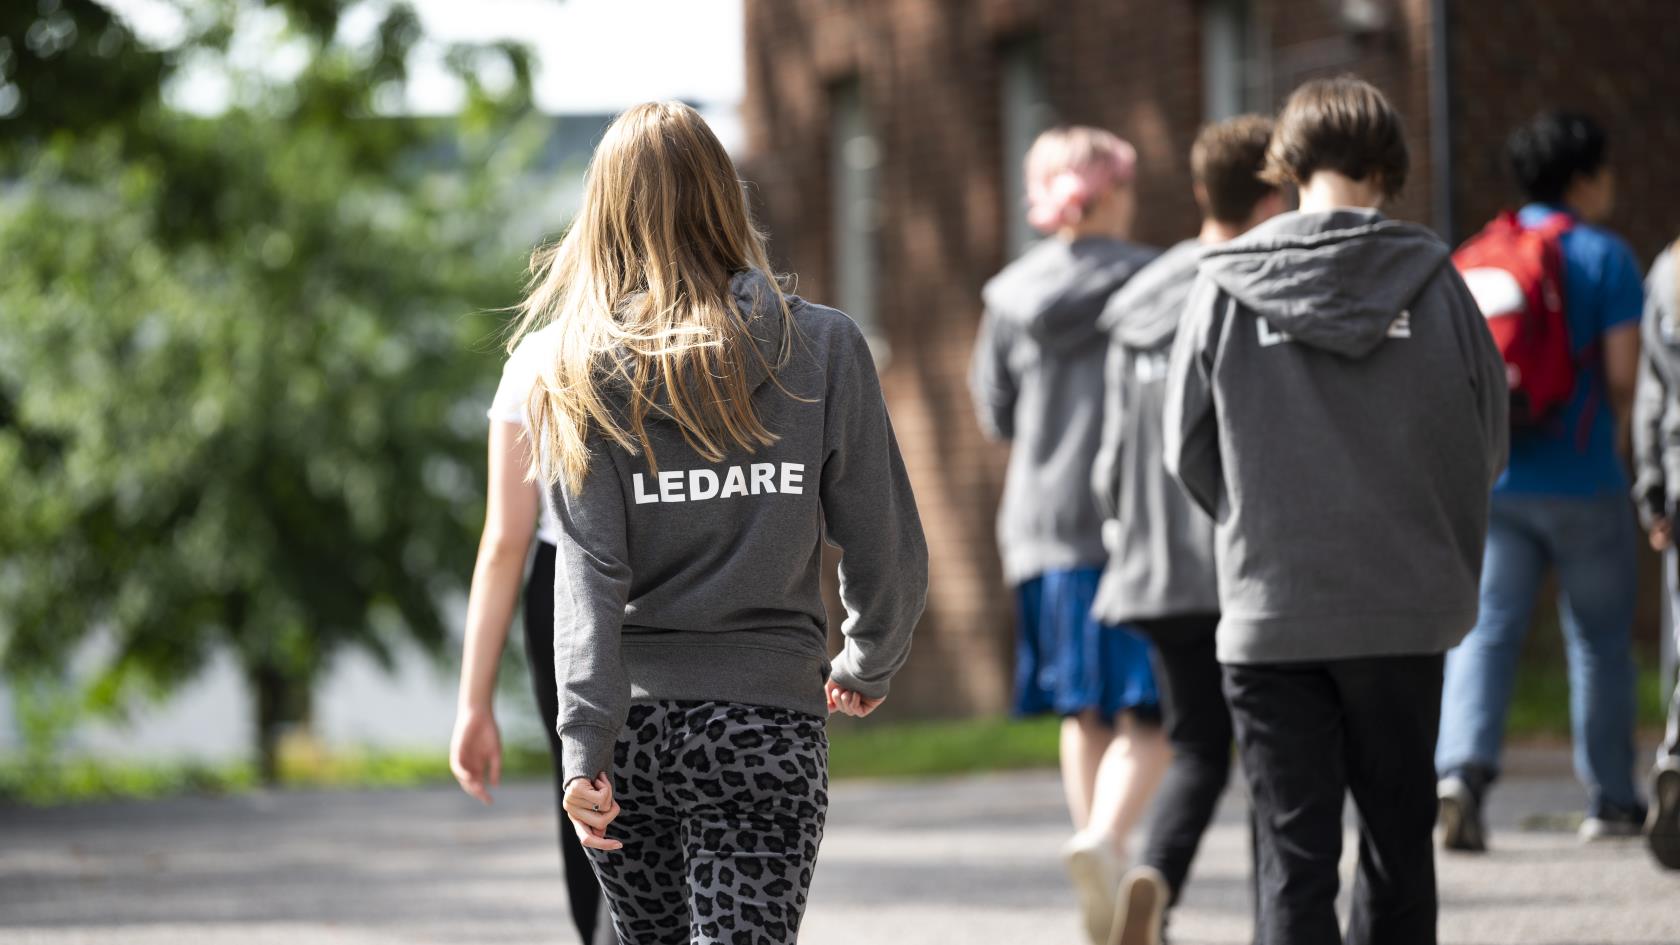 Vi ser ryggtavlorna på ett antal ungdomar. På en av deras huvtröjor står texten "Ledare".